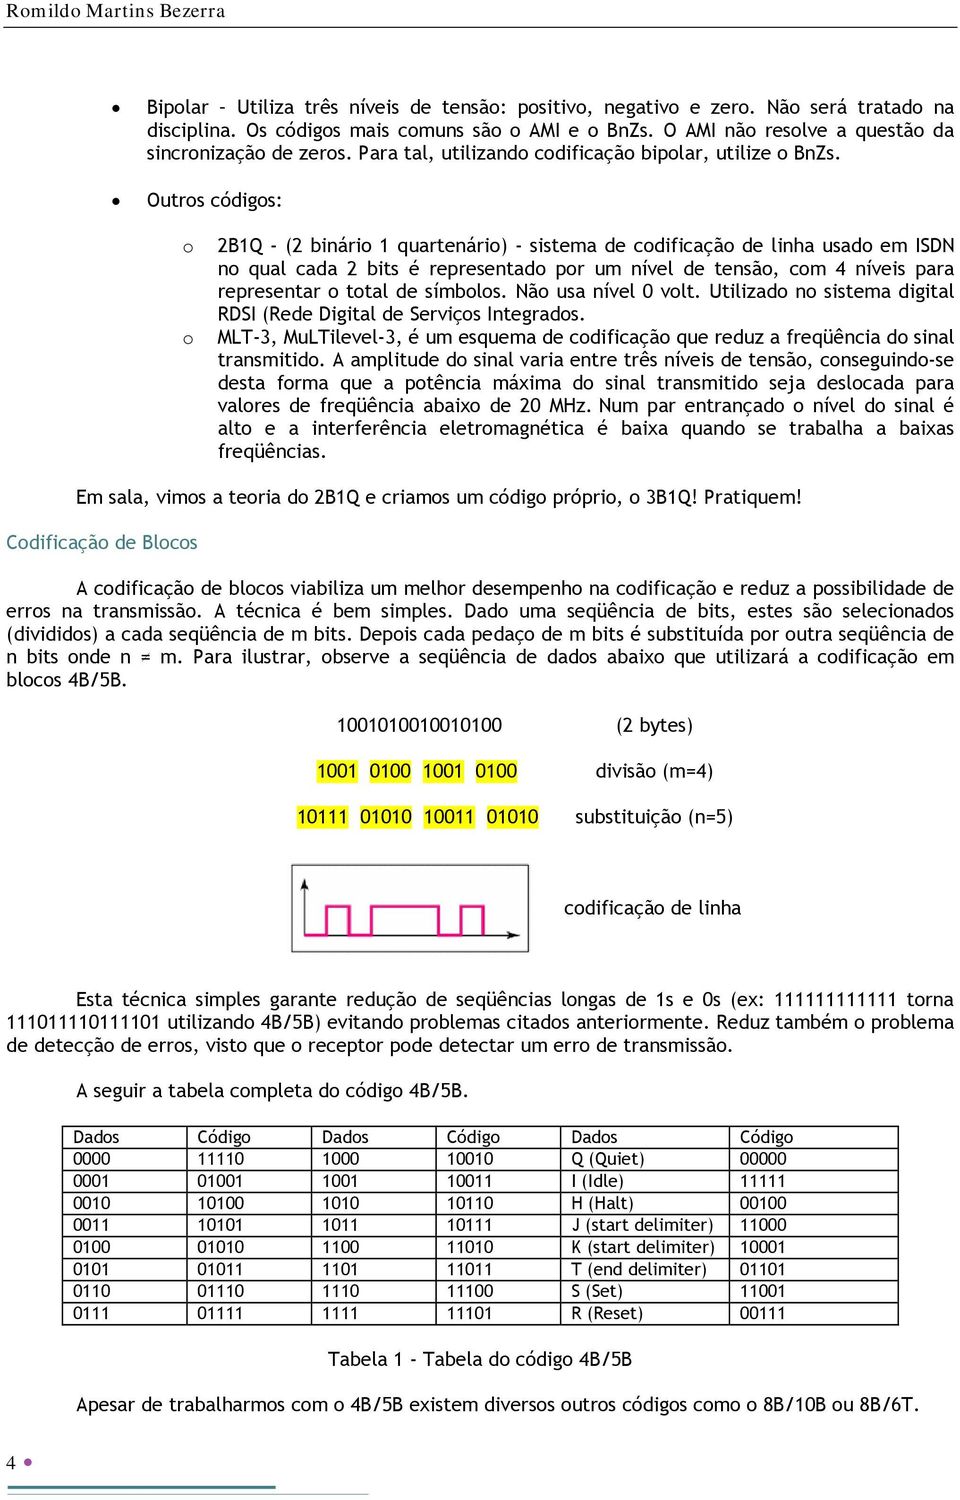 Outros códigos: o o 2B1Q - (2 binário 1 quartenário) - sistema de codificação de linha usado em ISDN no qual cada 2 bits é representado por um nível de tensão, com 4 níveis para representar o total